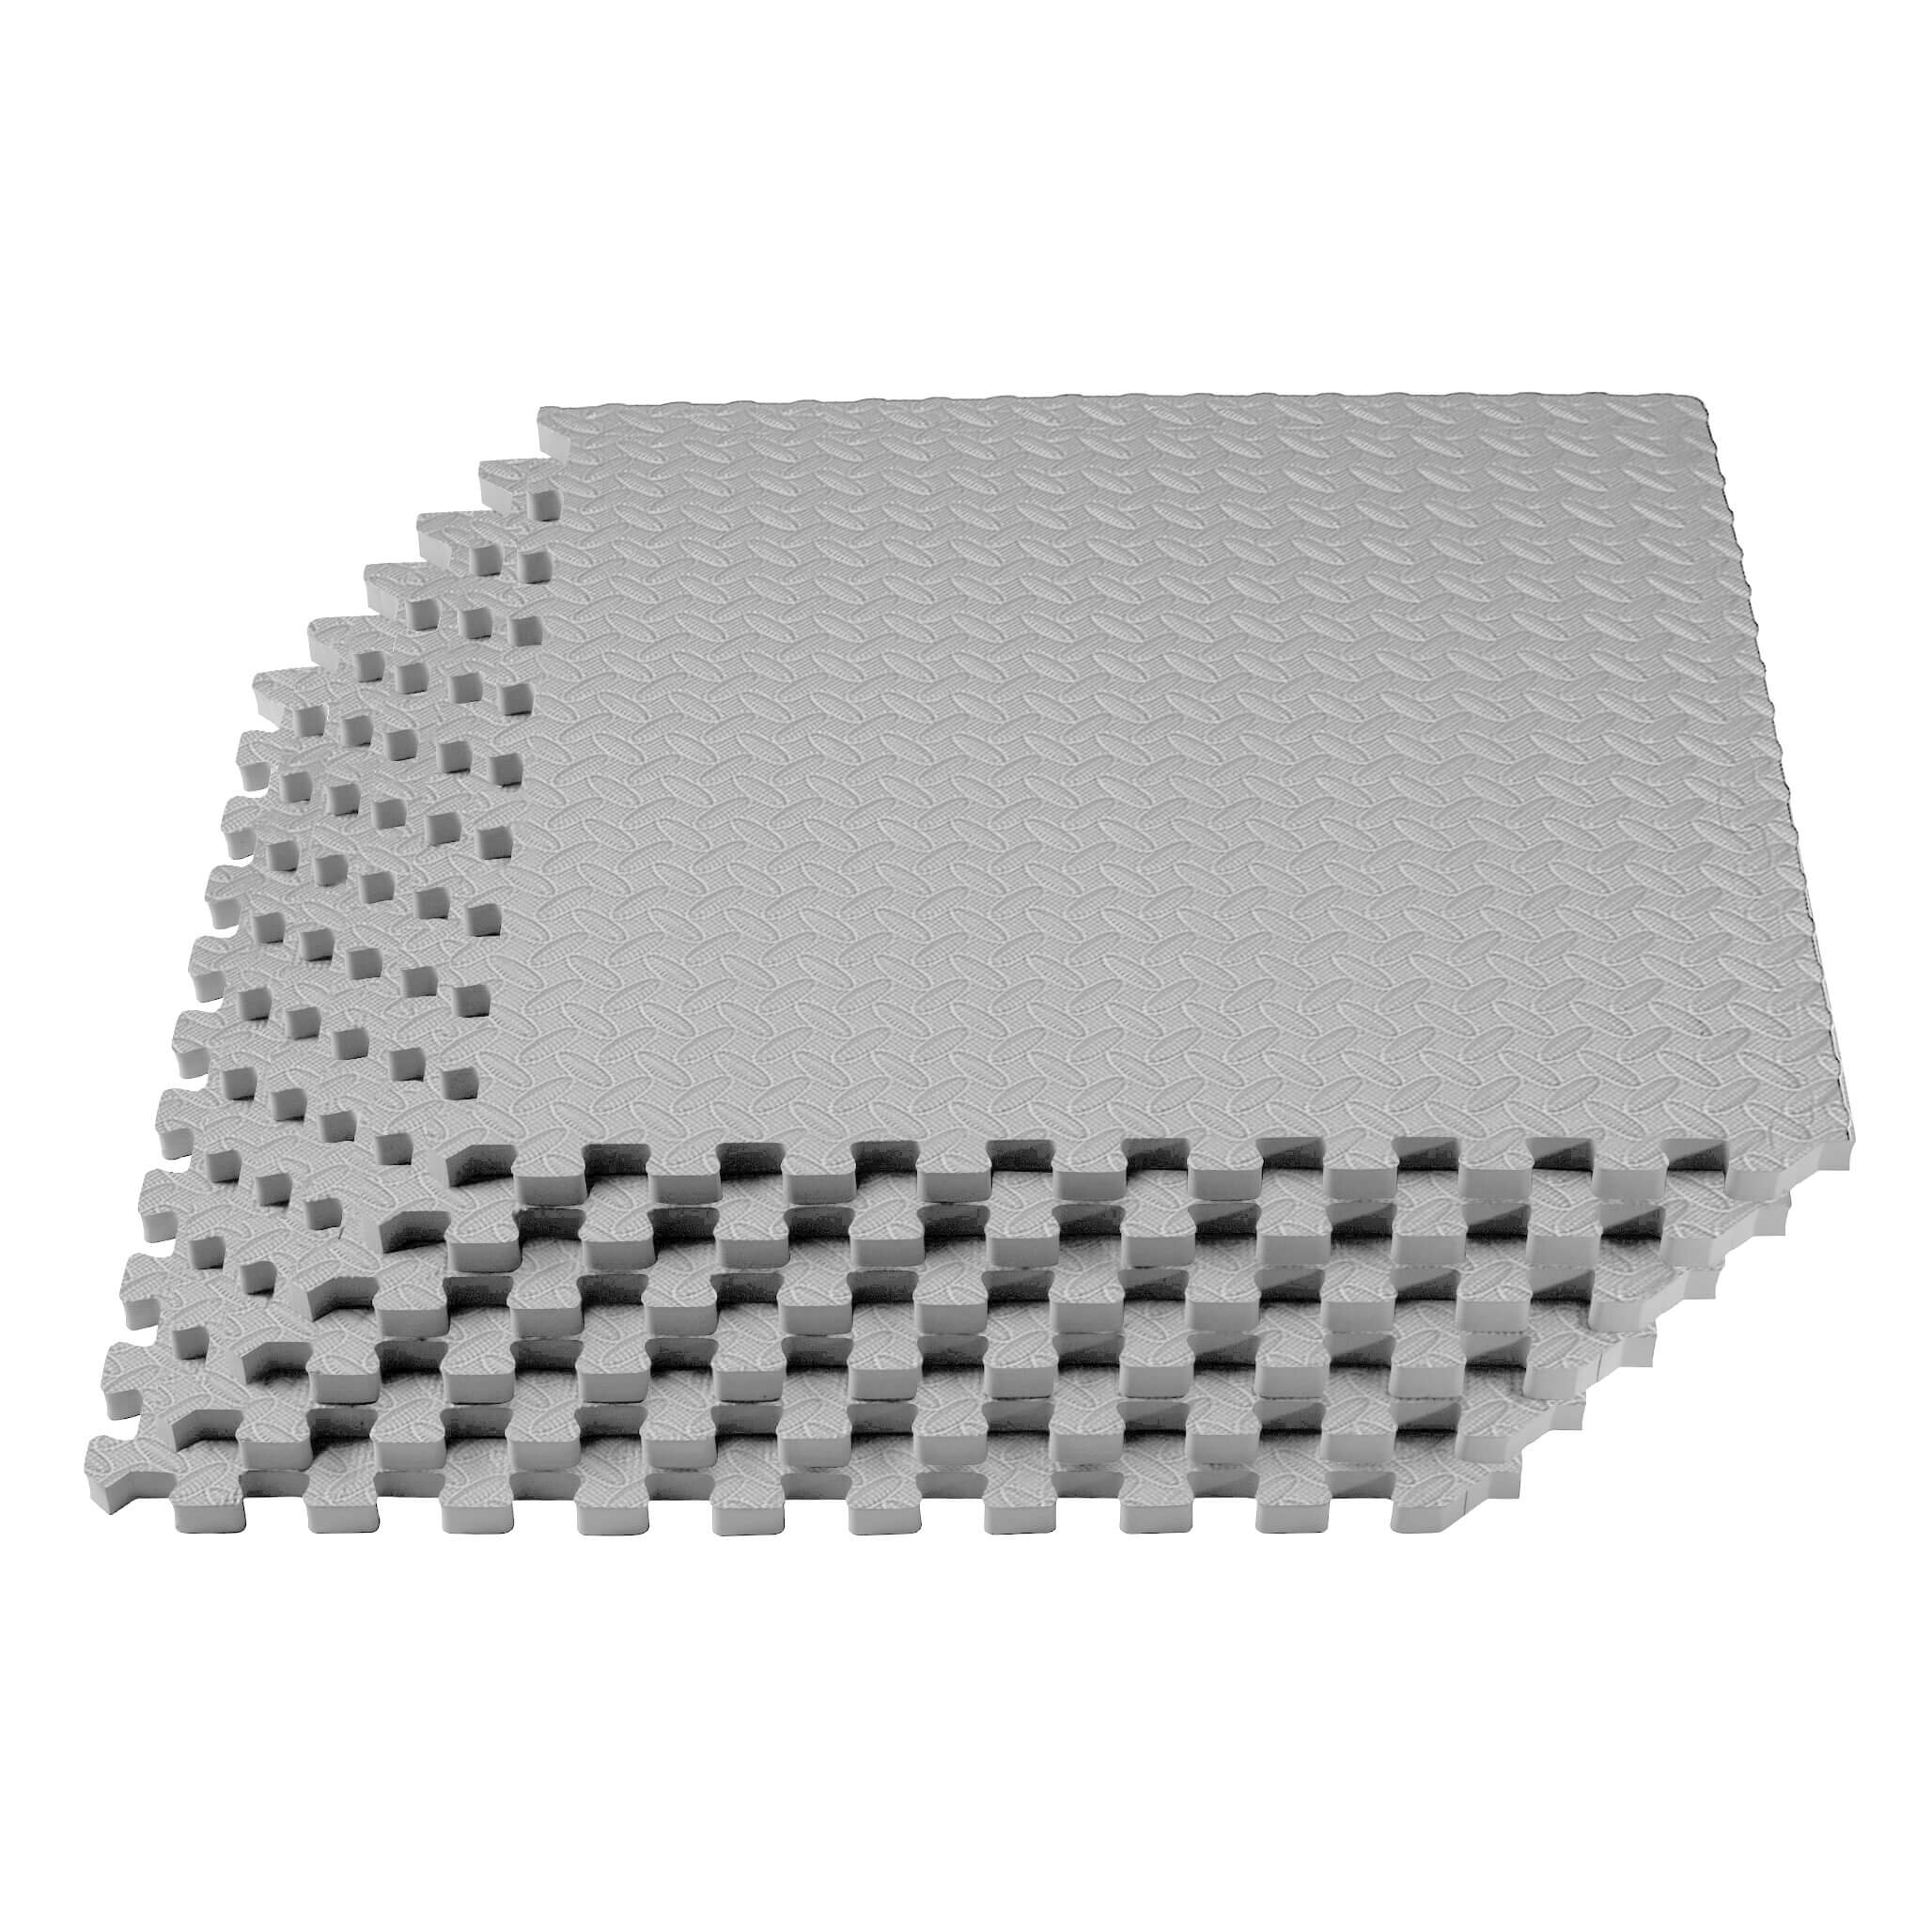 https://assets.wfcdn.com/im/78768890/compr-r85/1748/174825025/velotas-34-diamond-pattern-foam-fitness-mats.jpg